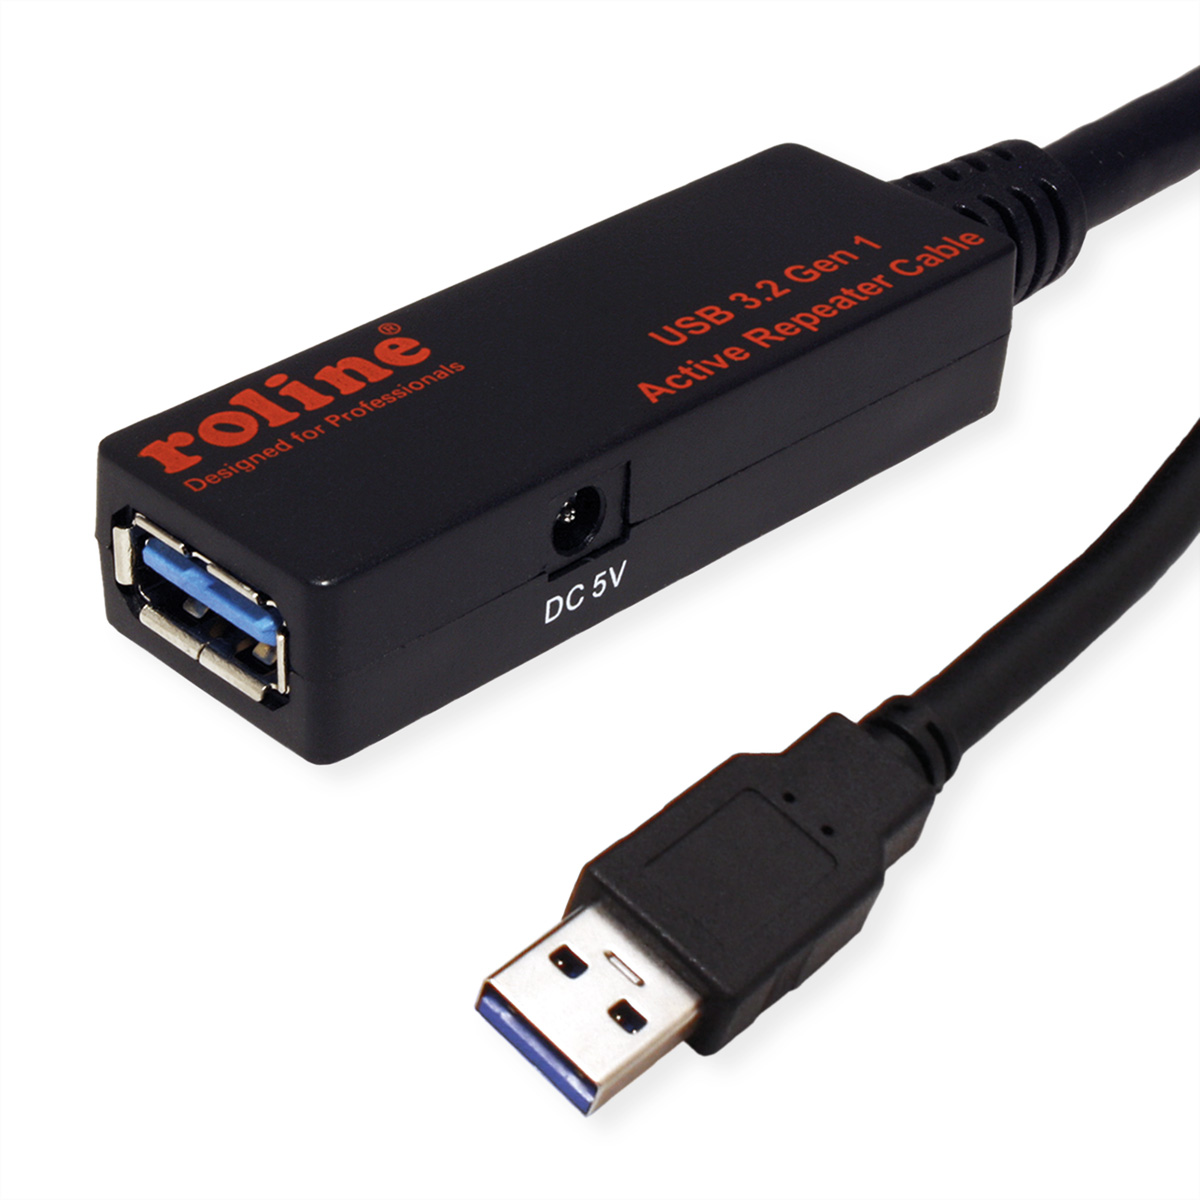 ROLINE USB 3.2 Gen 1 Aktives Repeater Kabel, schwarz, 15 m